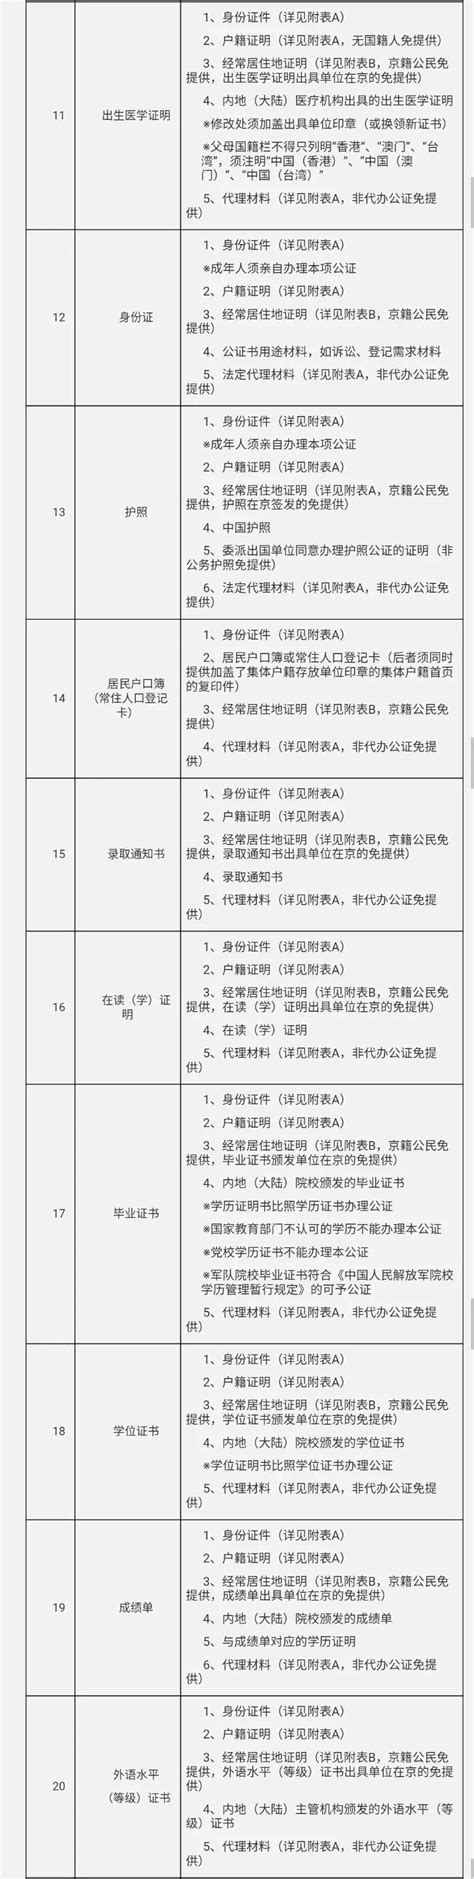 2018北京第一批公证事项证明材料清单(52项)- 北京本地宝